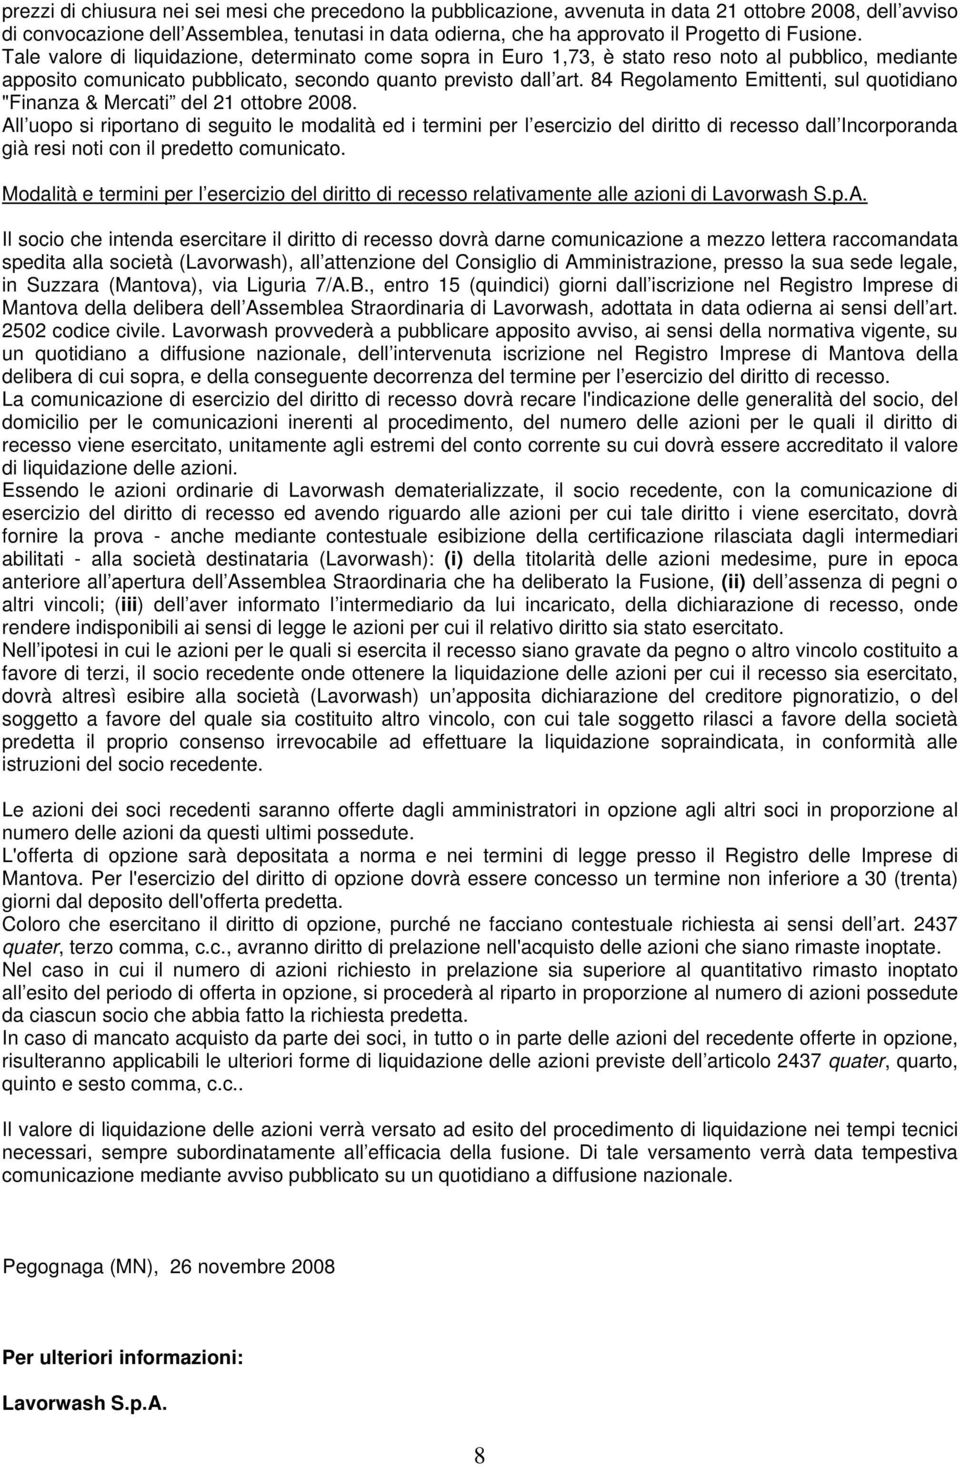 84 Regolamento Emittenti, sul quotidiano "Finanza & Mercati del 21 ottobre 2008.